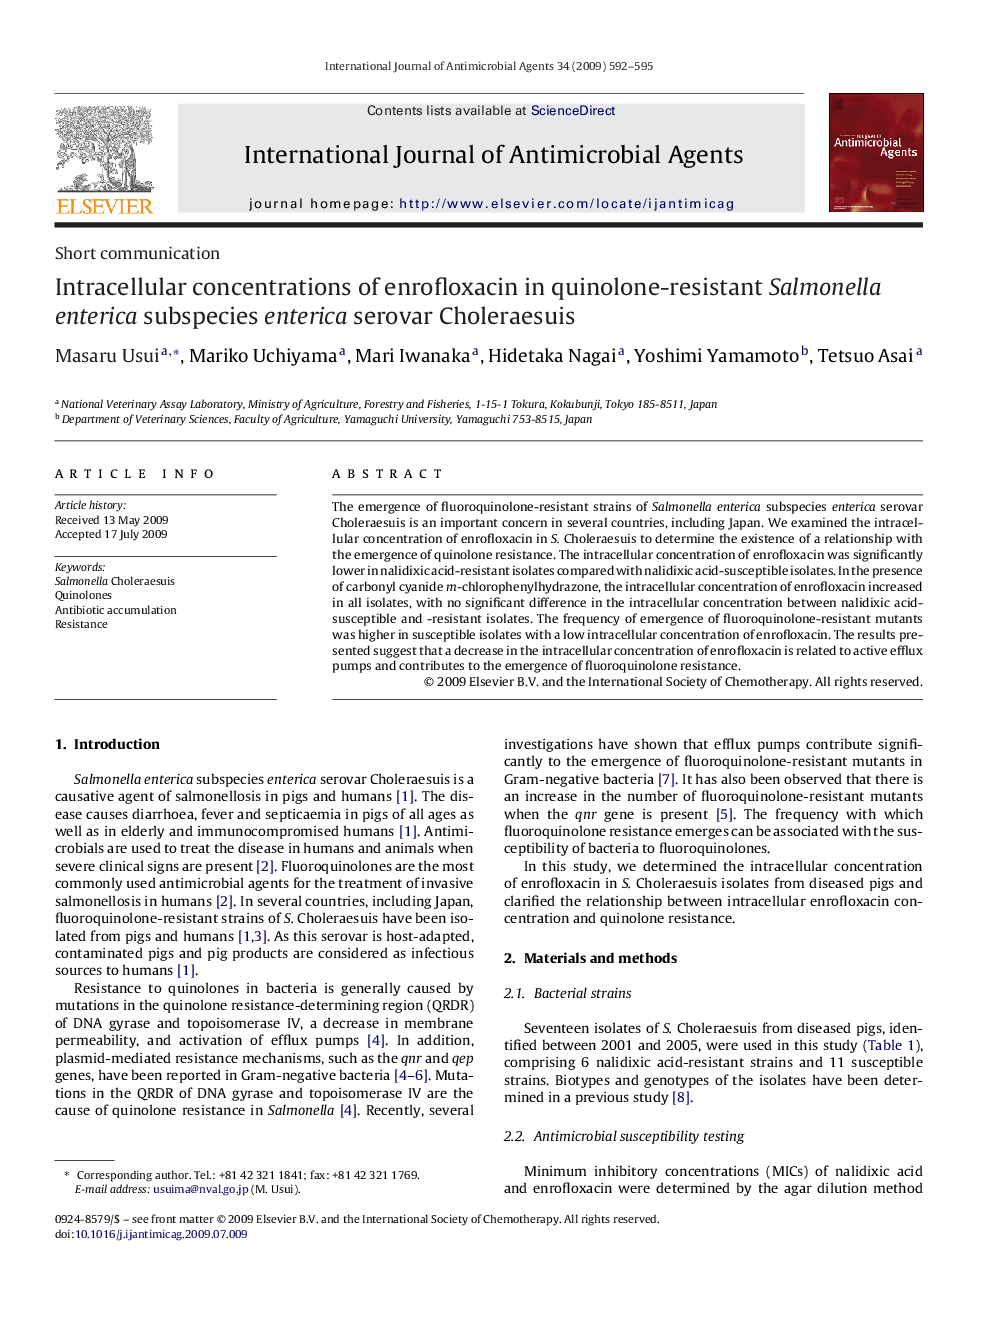 Intracellular concentrations of enrofloxacin in quinolone-resistant Salmonella enterica subspecies enterica serovar Choleraesuis